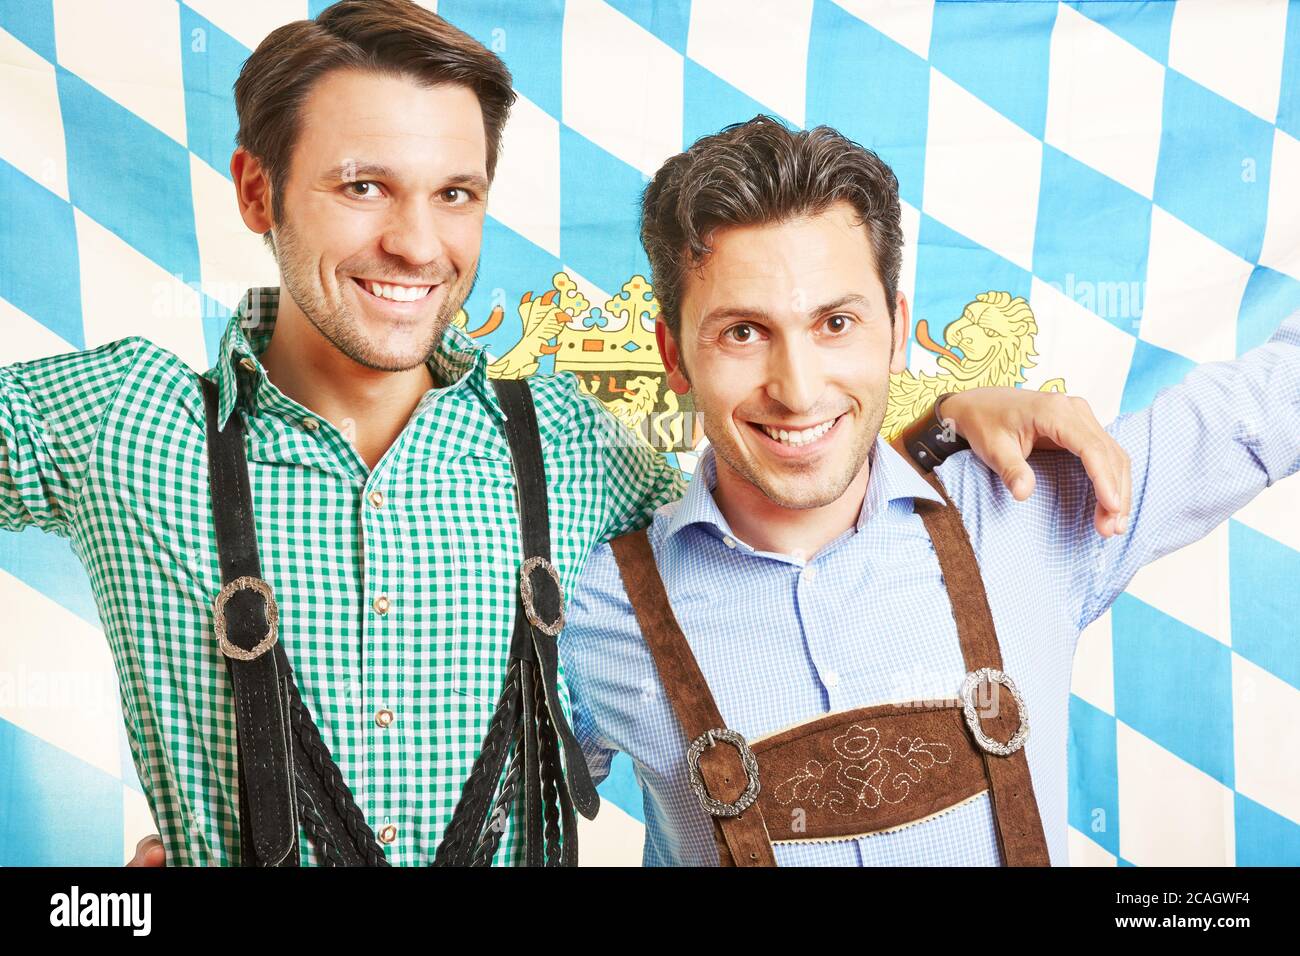 Two smiling men in lederhosen with the Bavarian flag celebrate the Oktoberfest Stock Photo